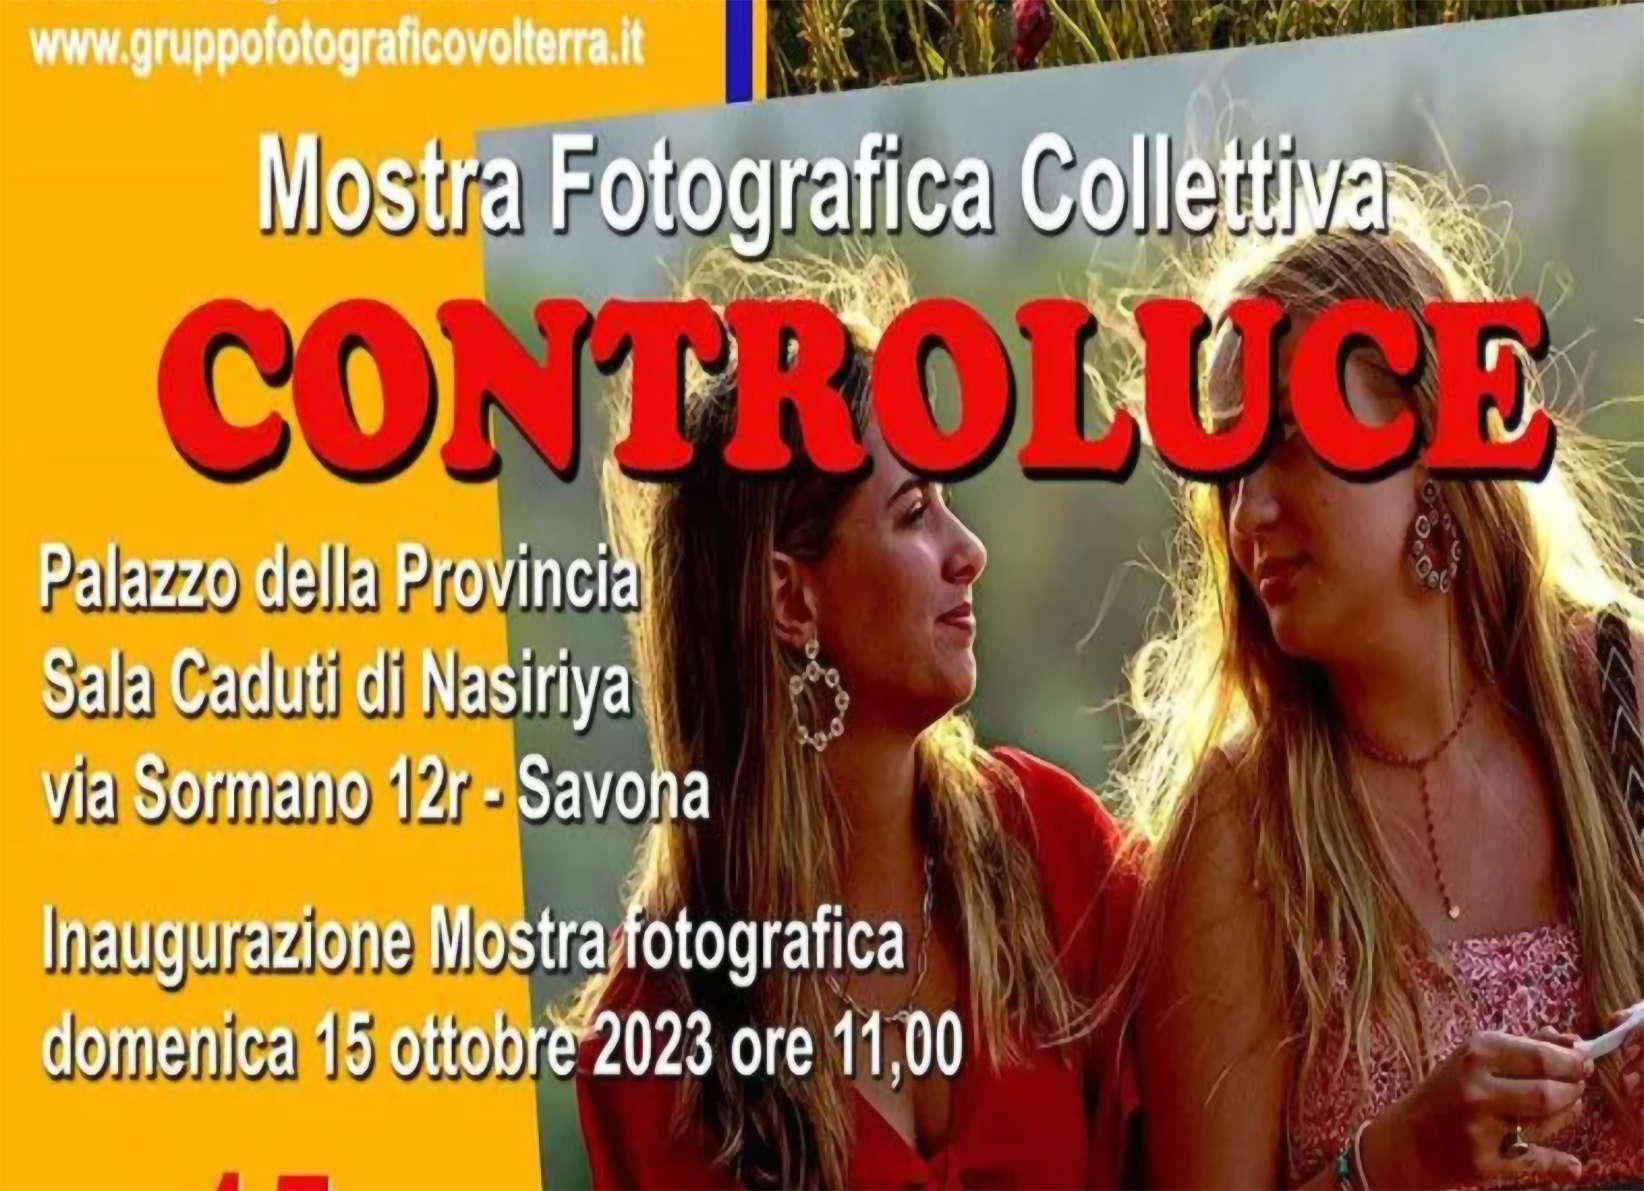 Savona 2023 Mostra fotografica collettiva controluce